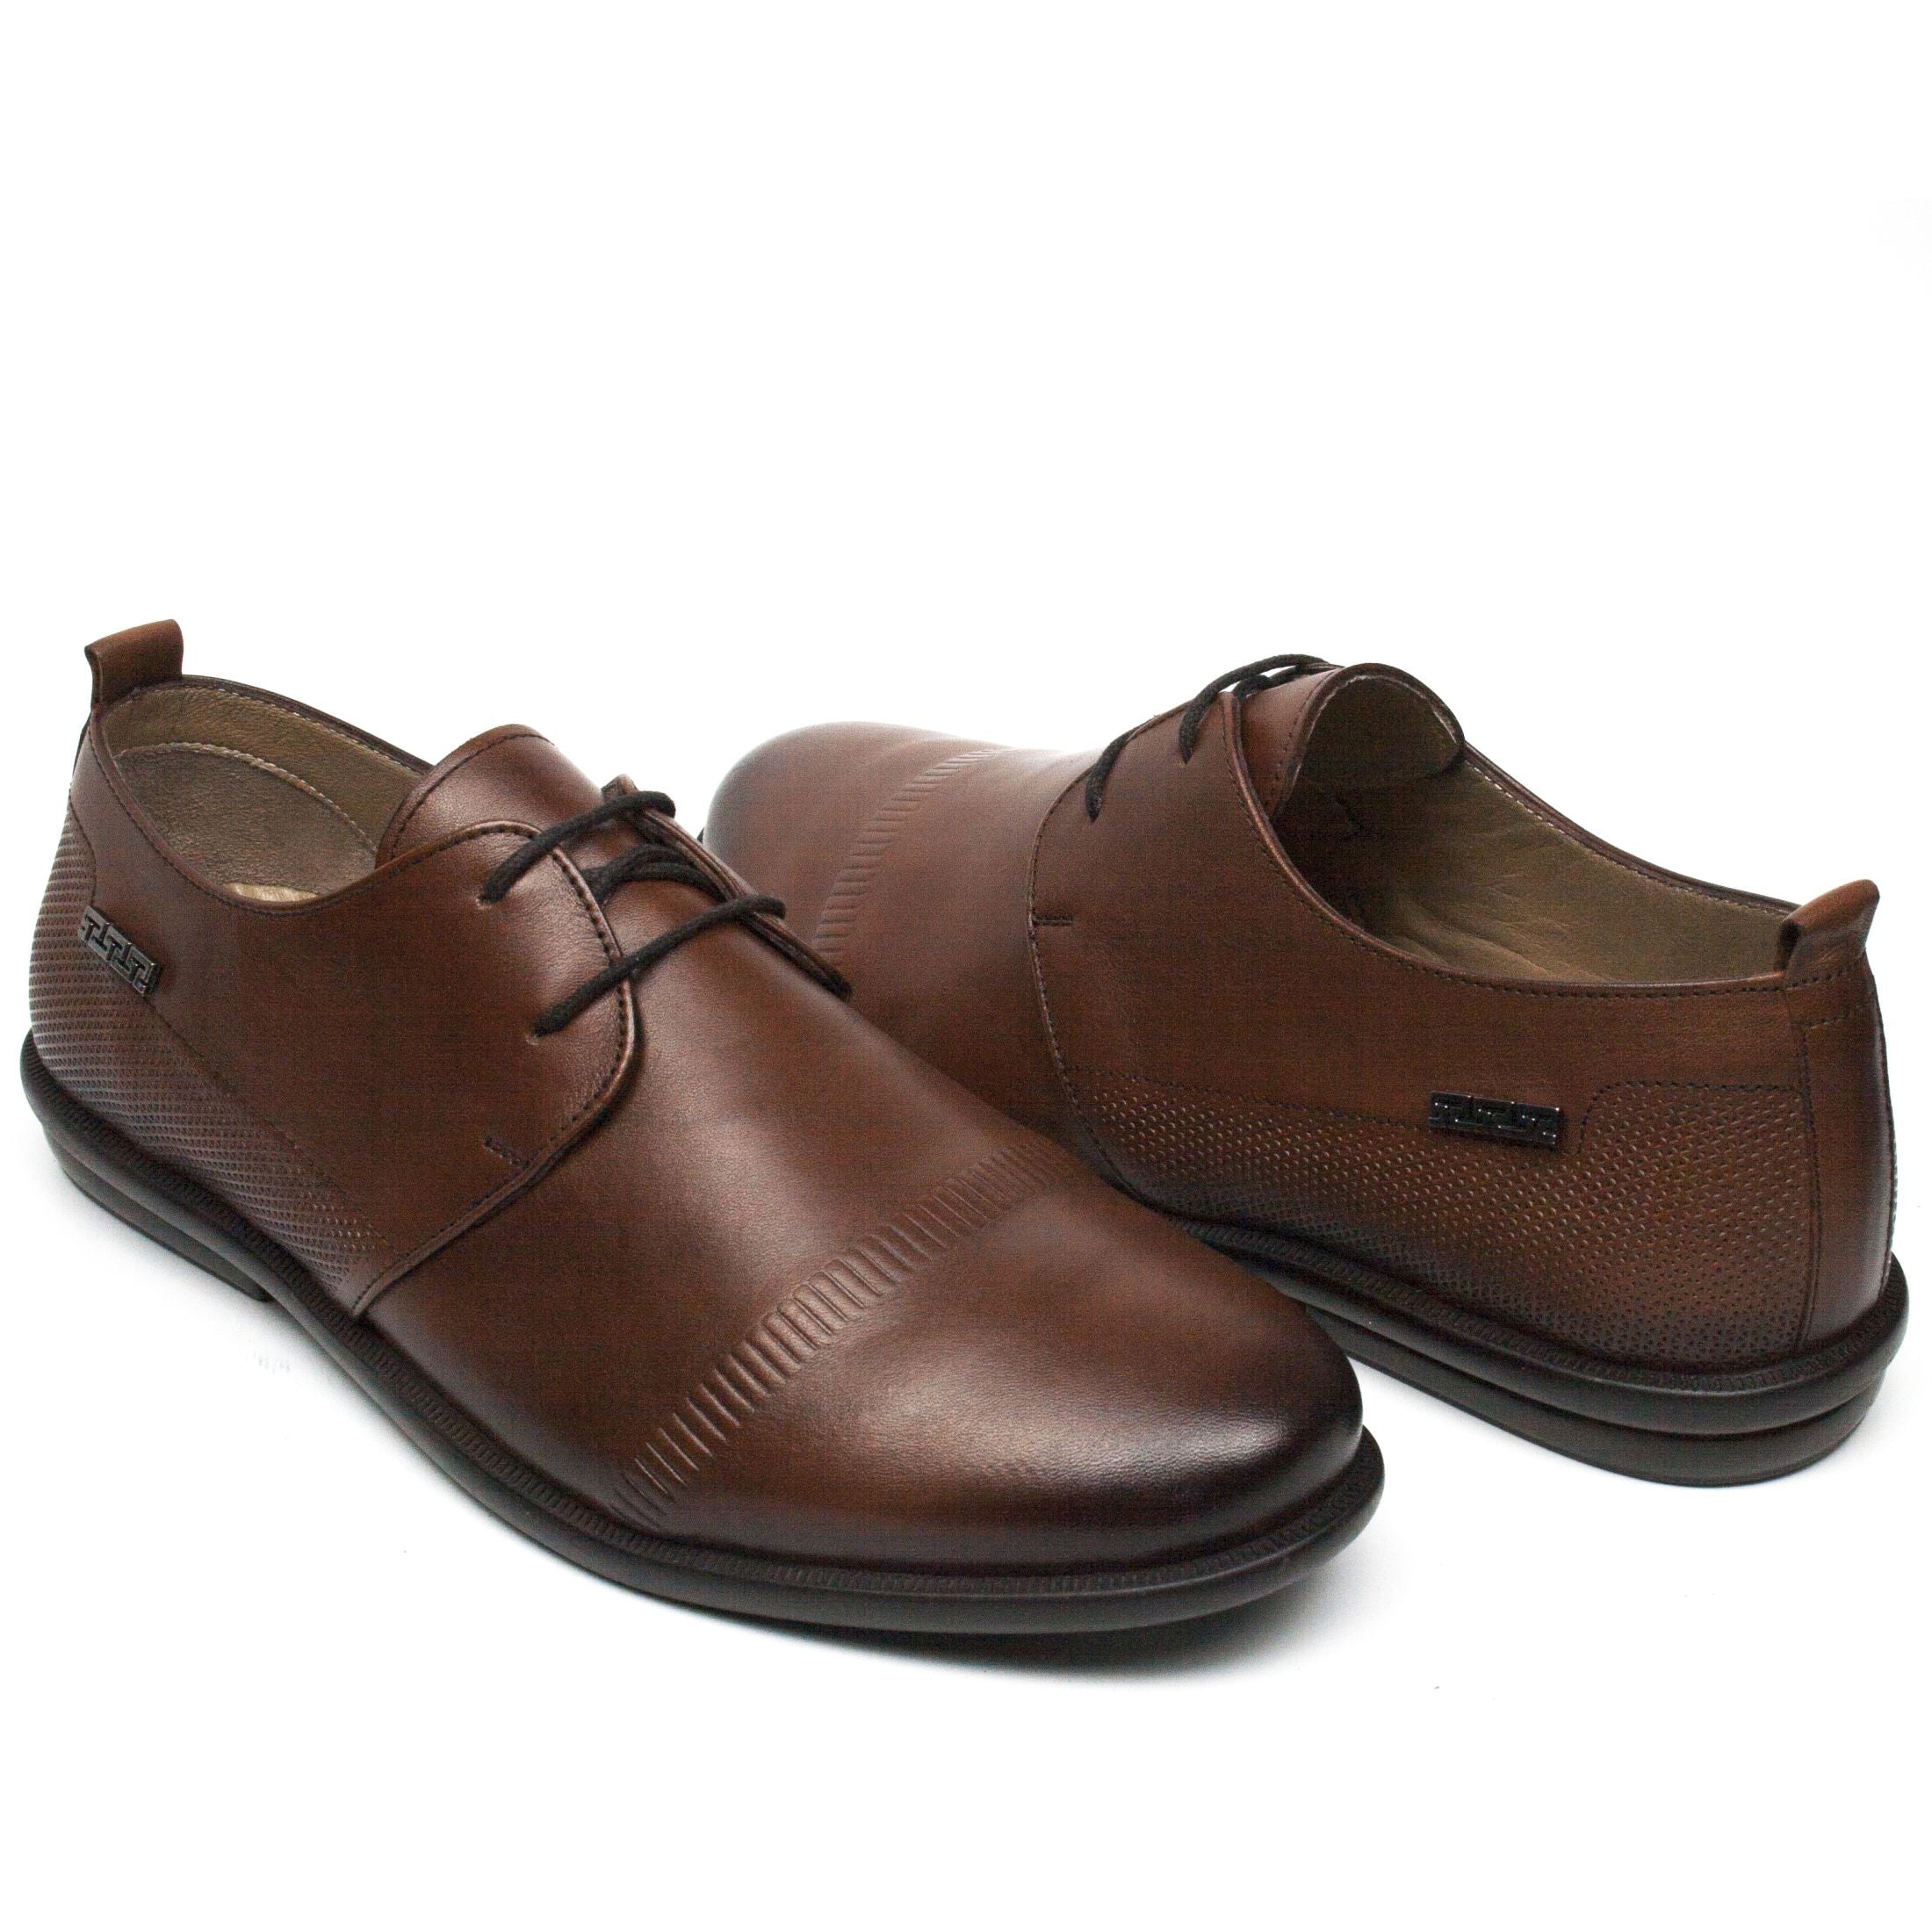 Gitanos pantofi barbati cognac IB0609-CGN